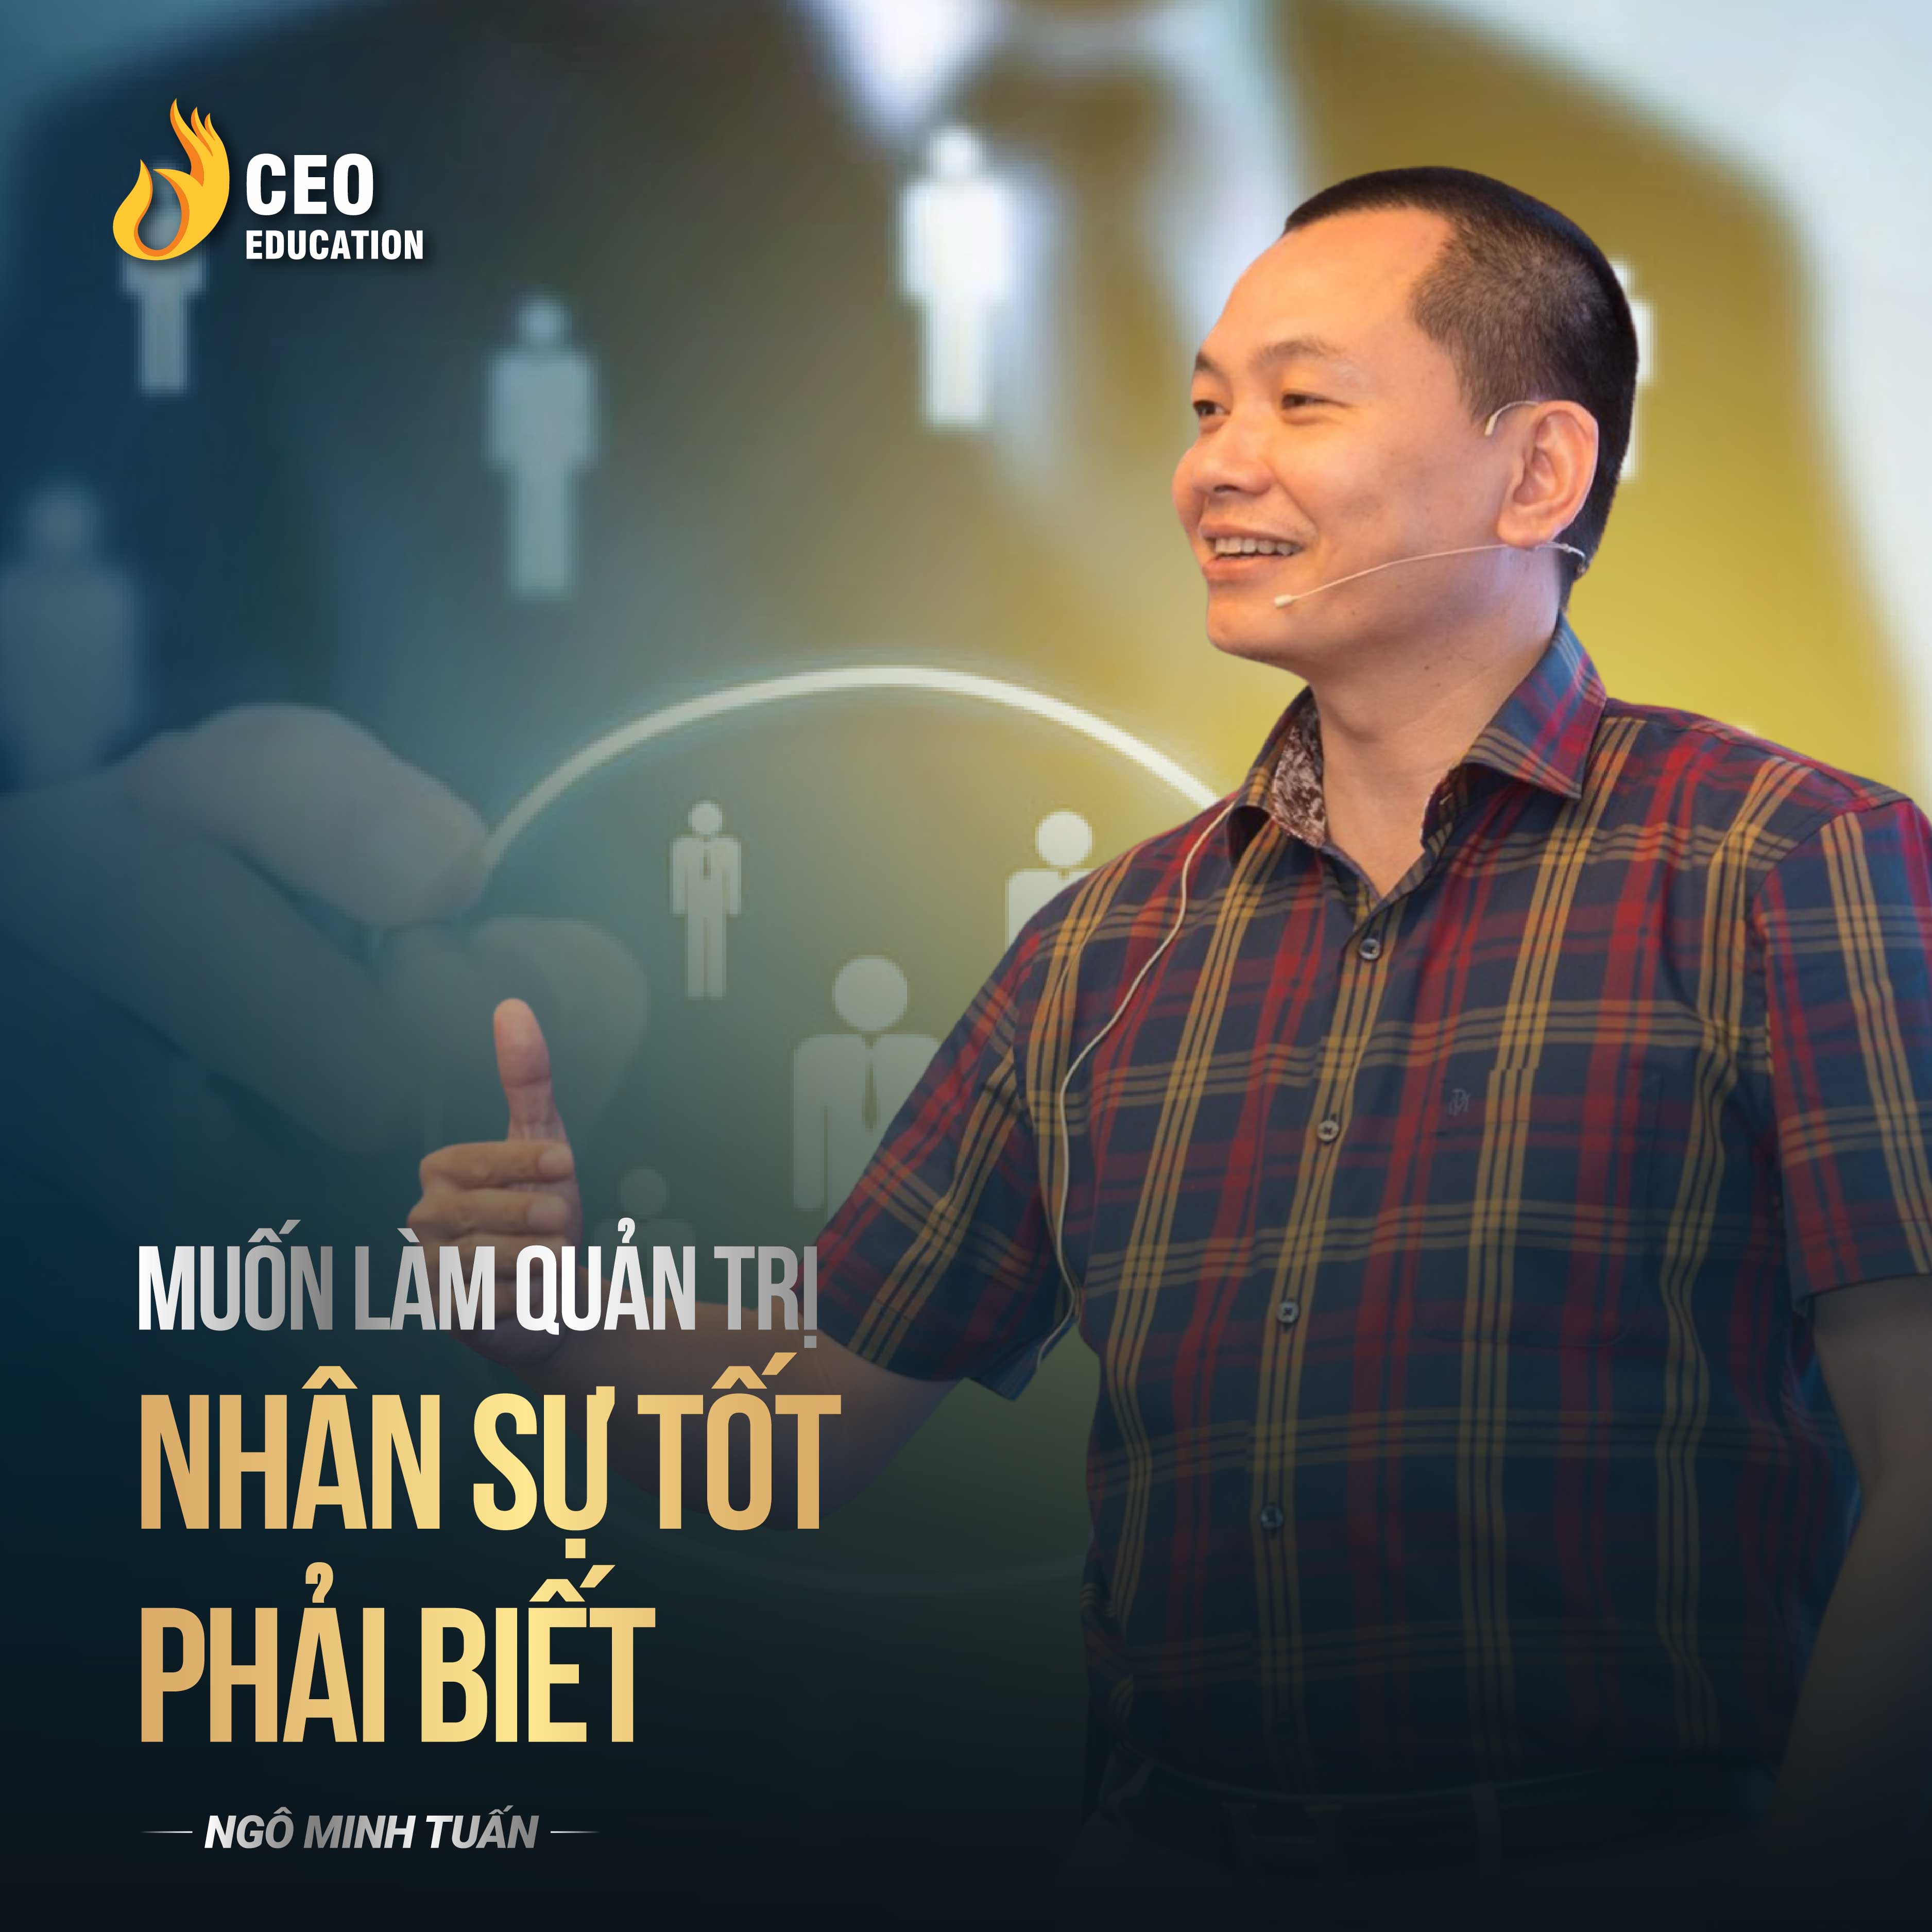 Muốn làm quản trị nhân sự tốt phải biết | Ngô Minh Tuấn | Học Viện CEO Việt Nam